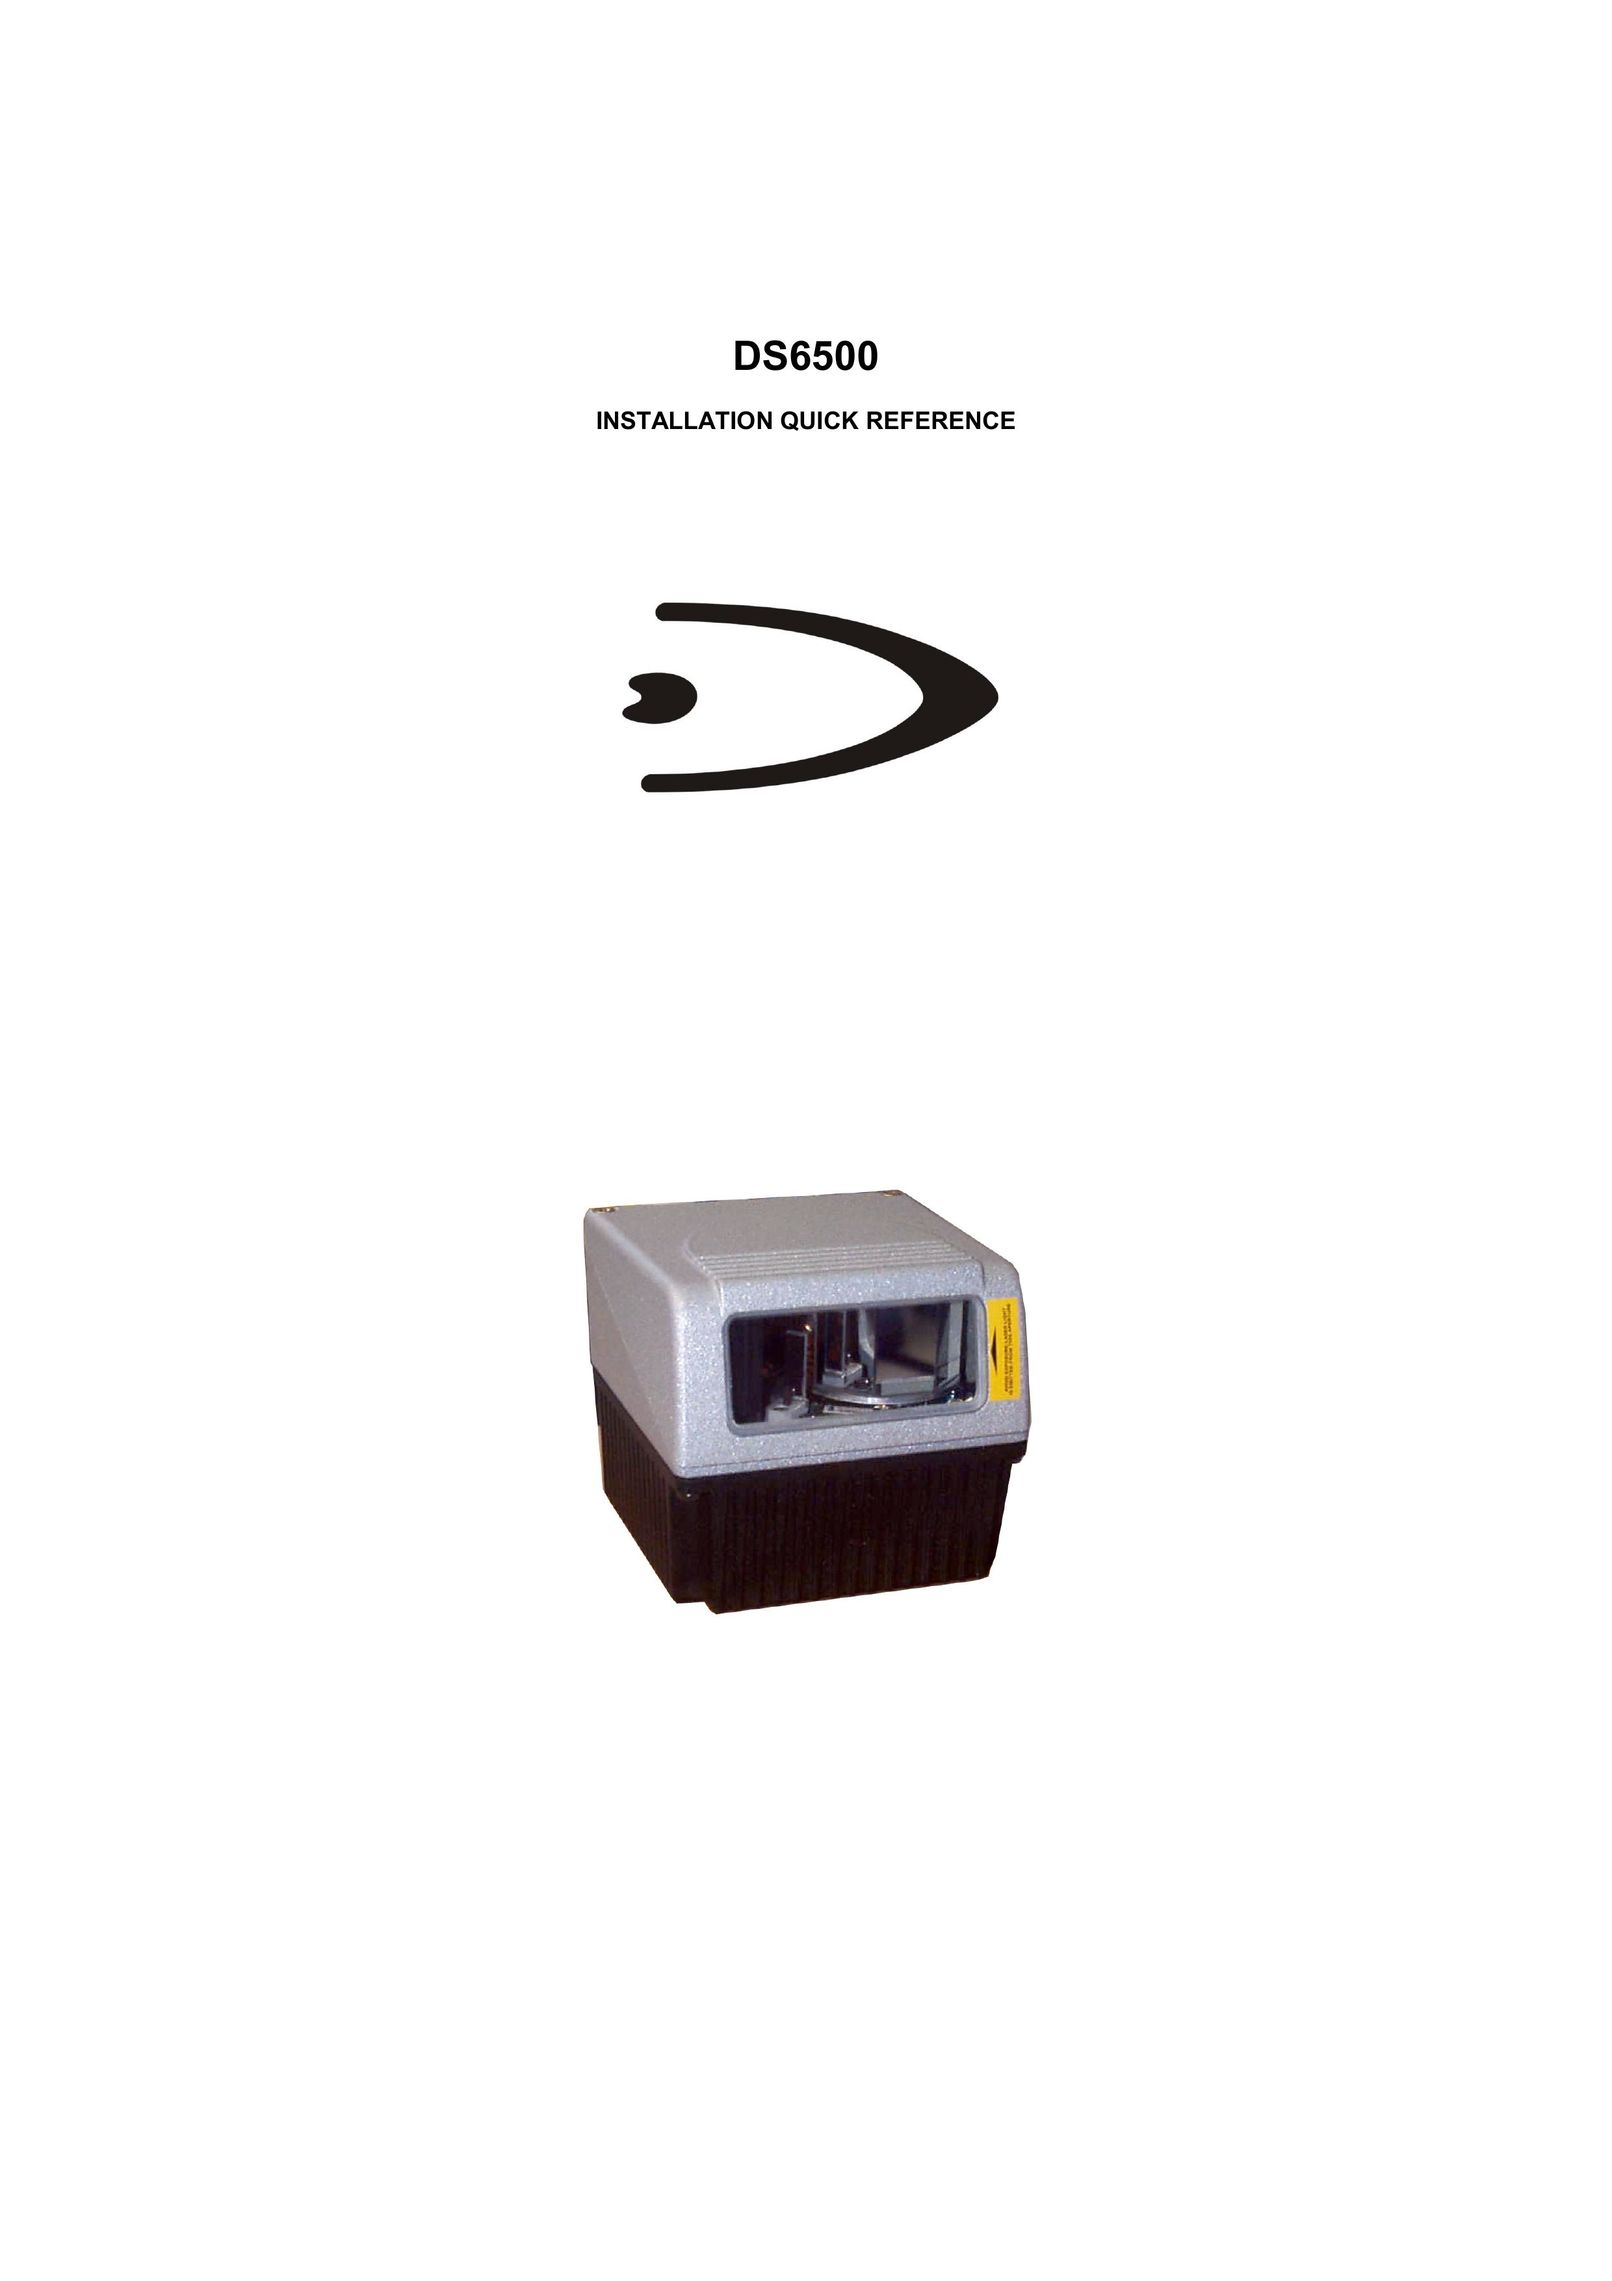 Datalogic Scanning DS6500-100-010 Scanner User Manual